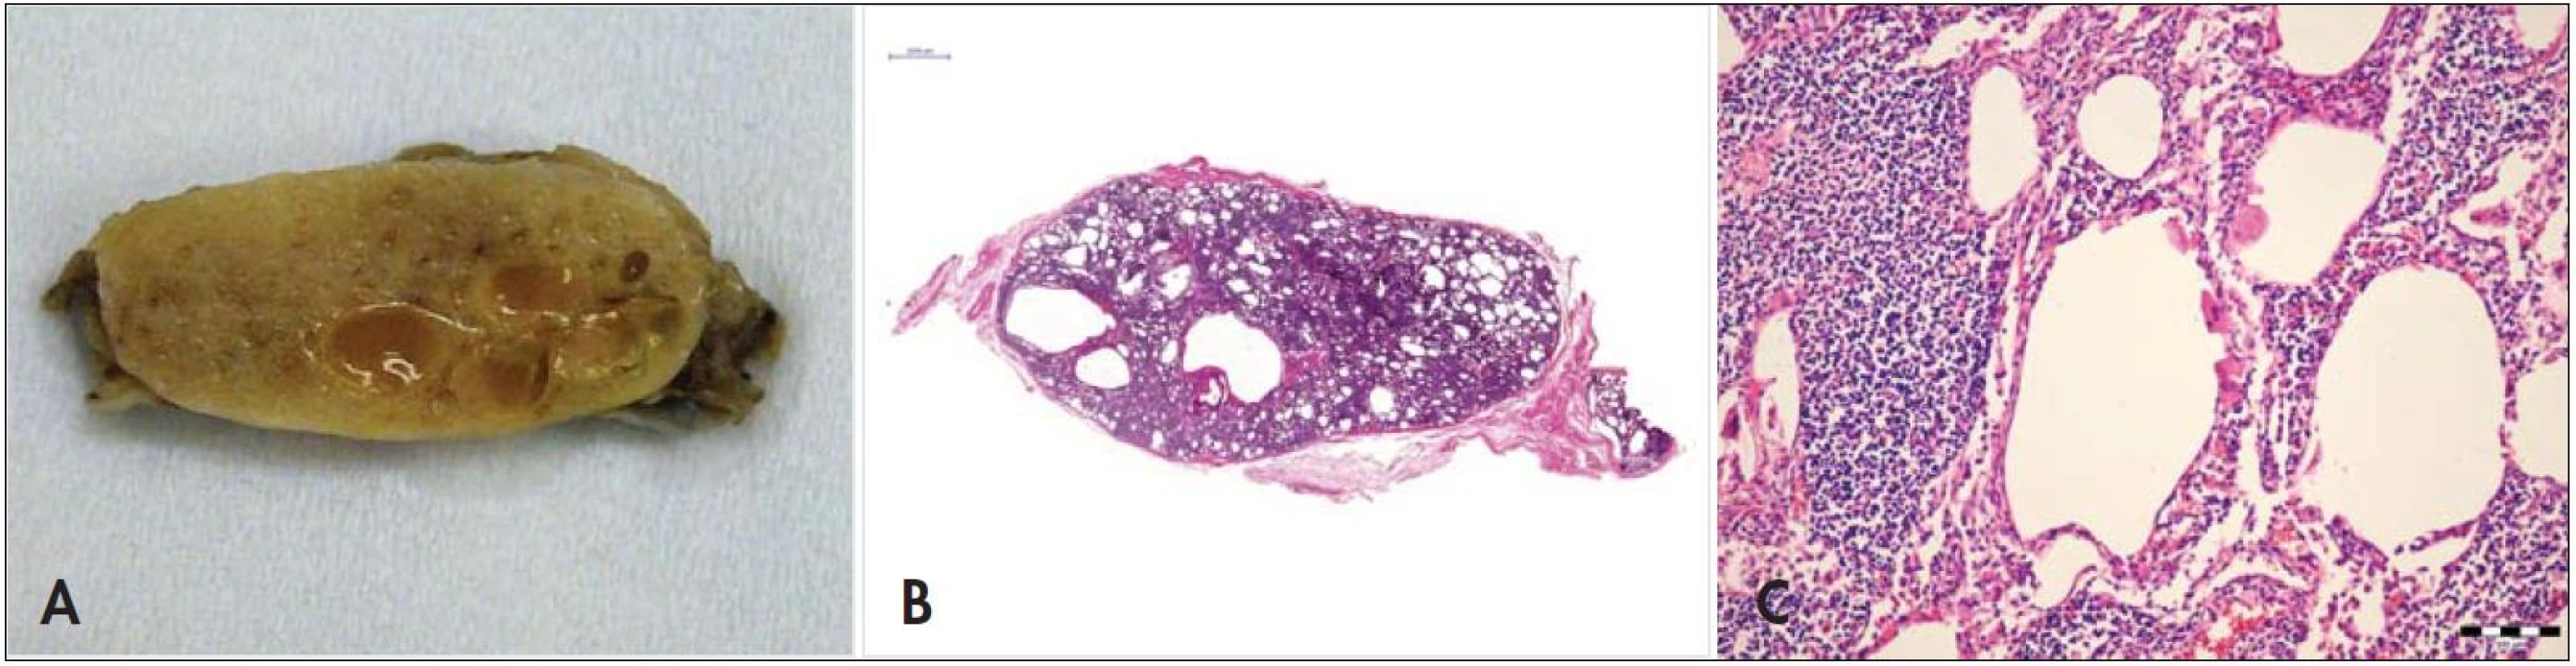 (A) Abdominálna lymfatická uzlina na reze. Je zachytená špongiovitá až cystická štruktúra spôsobená chylektáziami. (B) Histotopogram rezu lymfatickou uzlinou. (C) Histologický obraz pri veľkom zvätšení. Sú zachytené epiteloidné bunky s penovitou ružovou cytoplazmou obsahujúce mikroorganizmy a charakteristické chylektázie, hematoxylín-eozín, zvätšenie 200krát.